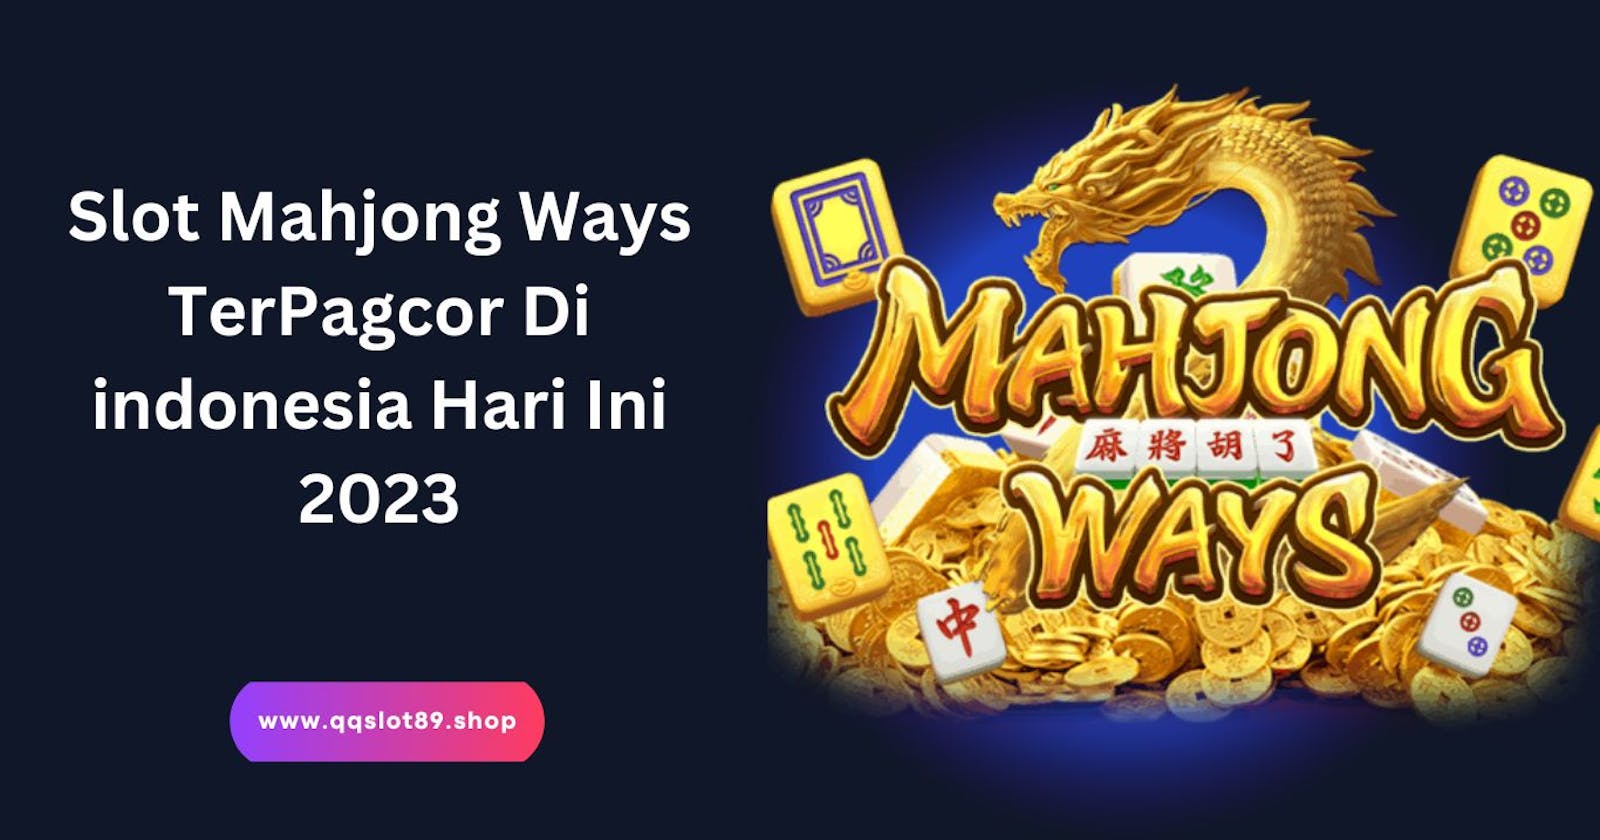 Slot Mahjong Ways TerPagcor Di Indonesia Hari Ini 2023